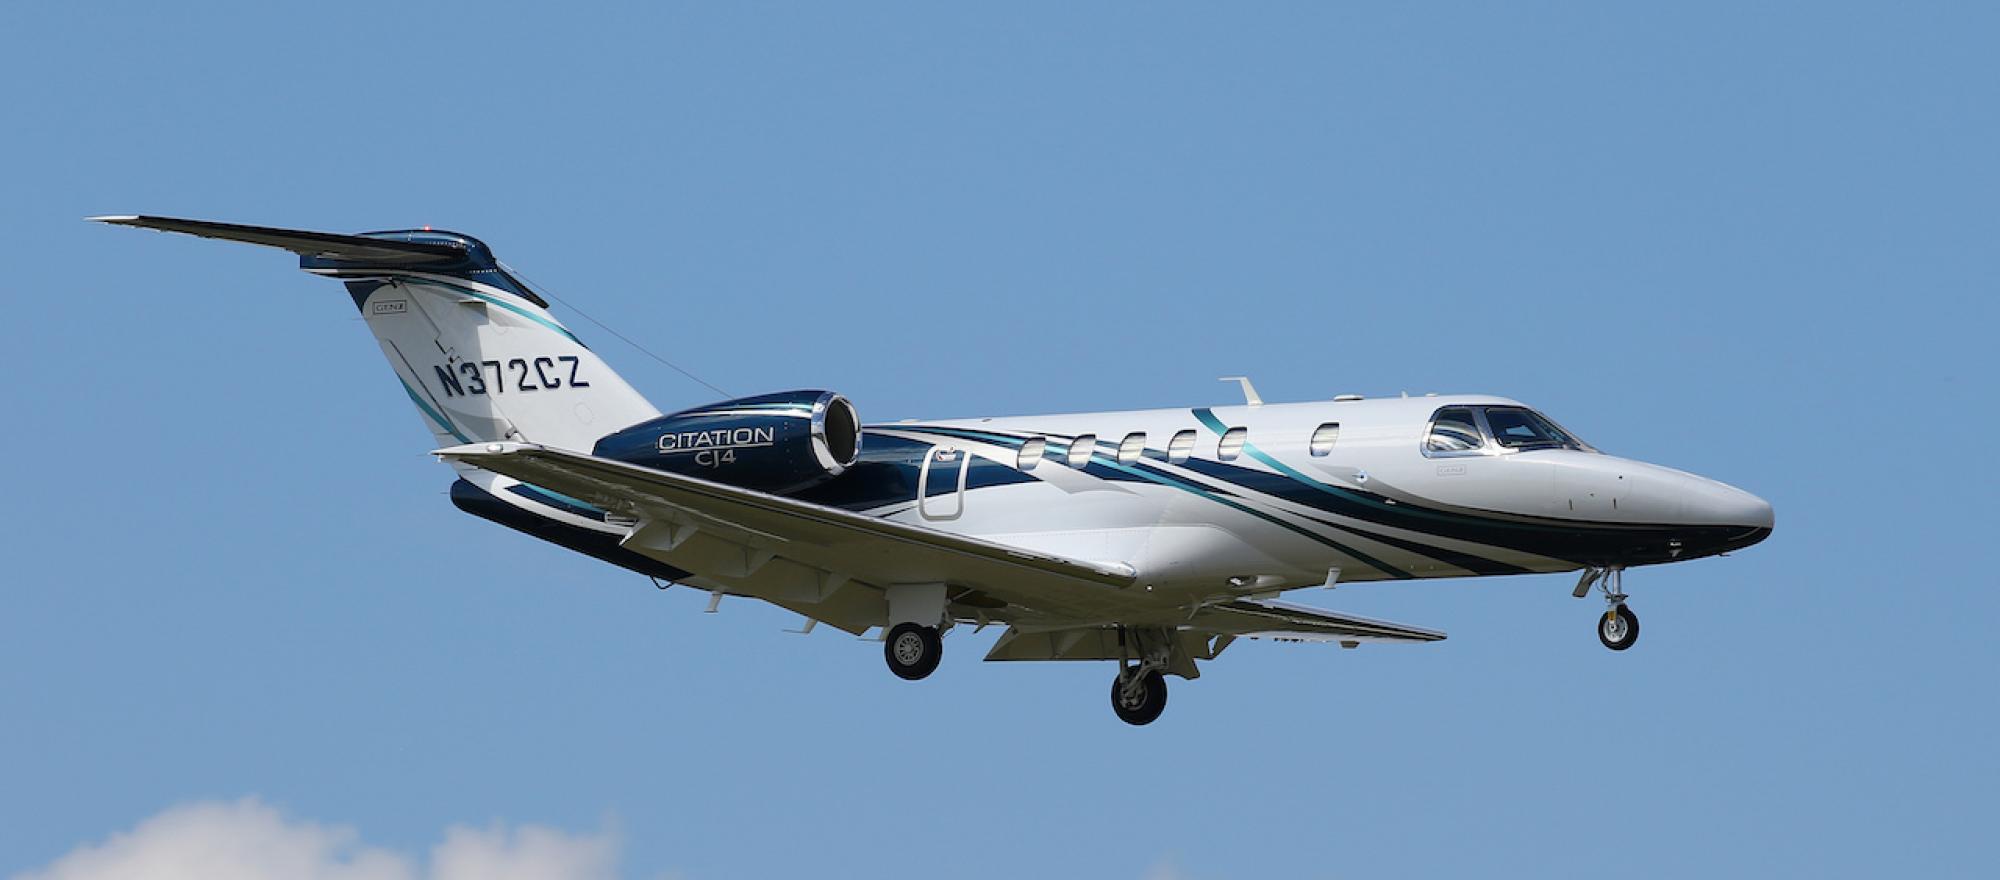 Cessna Citation CJ4 in flight